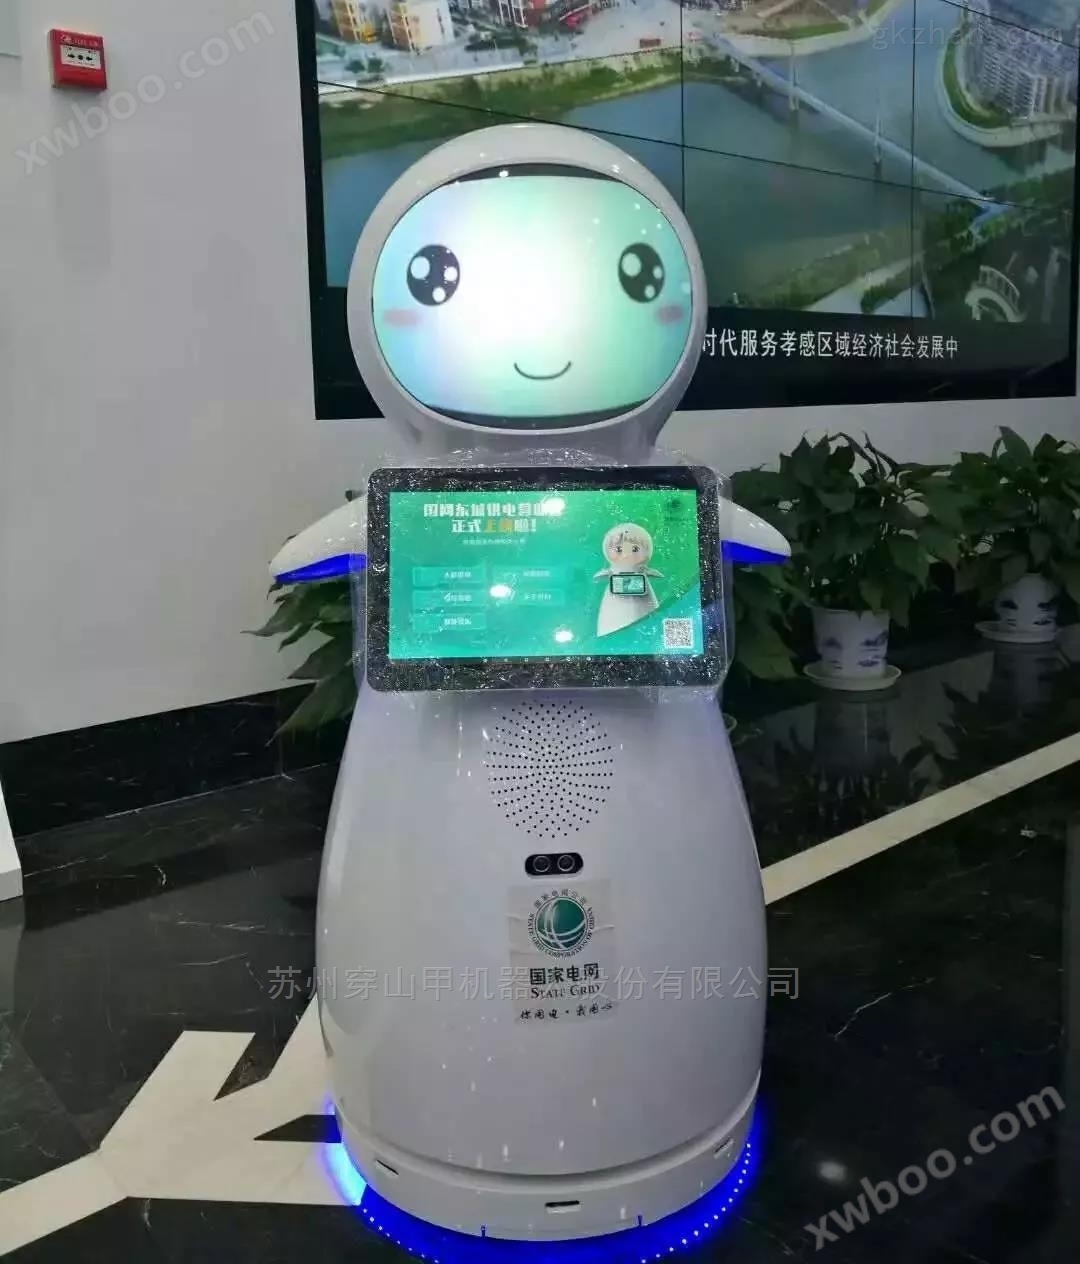 河北沧州市中心医院院史馆医疗导诊机器人